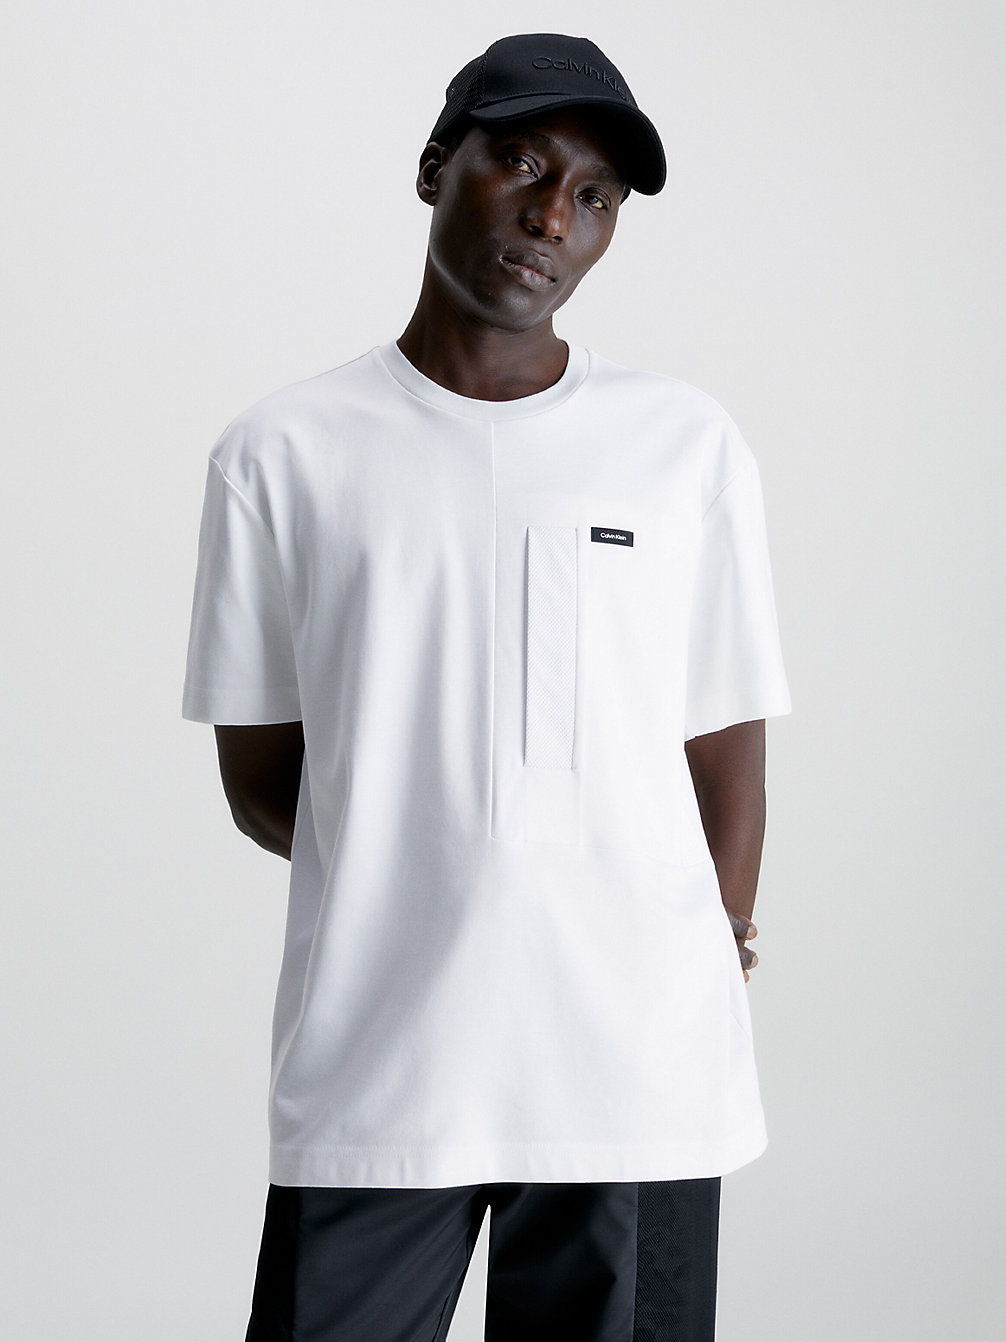 BRIGHT WHITE > T-Shirt Met Mesh Zakje > undefined heren - Calvin Klein